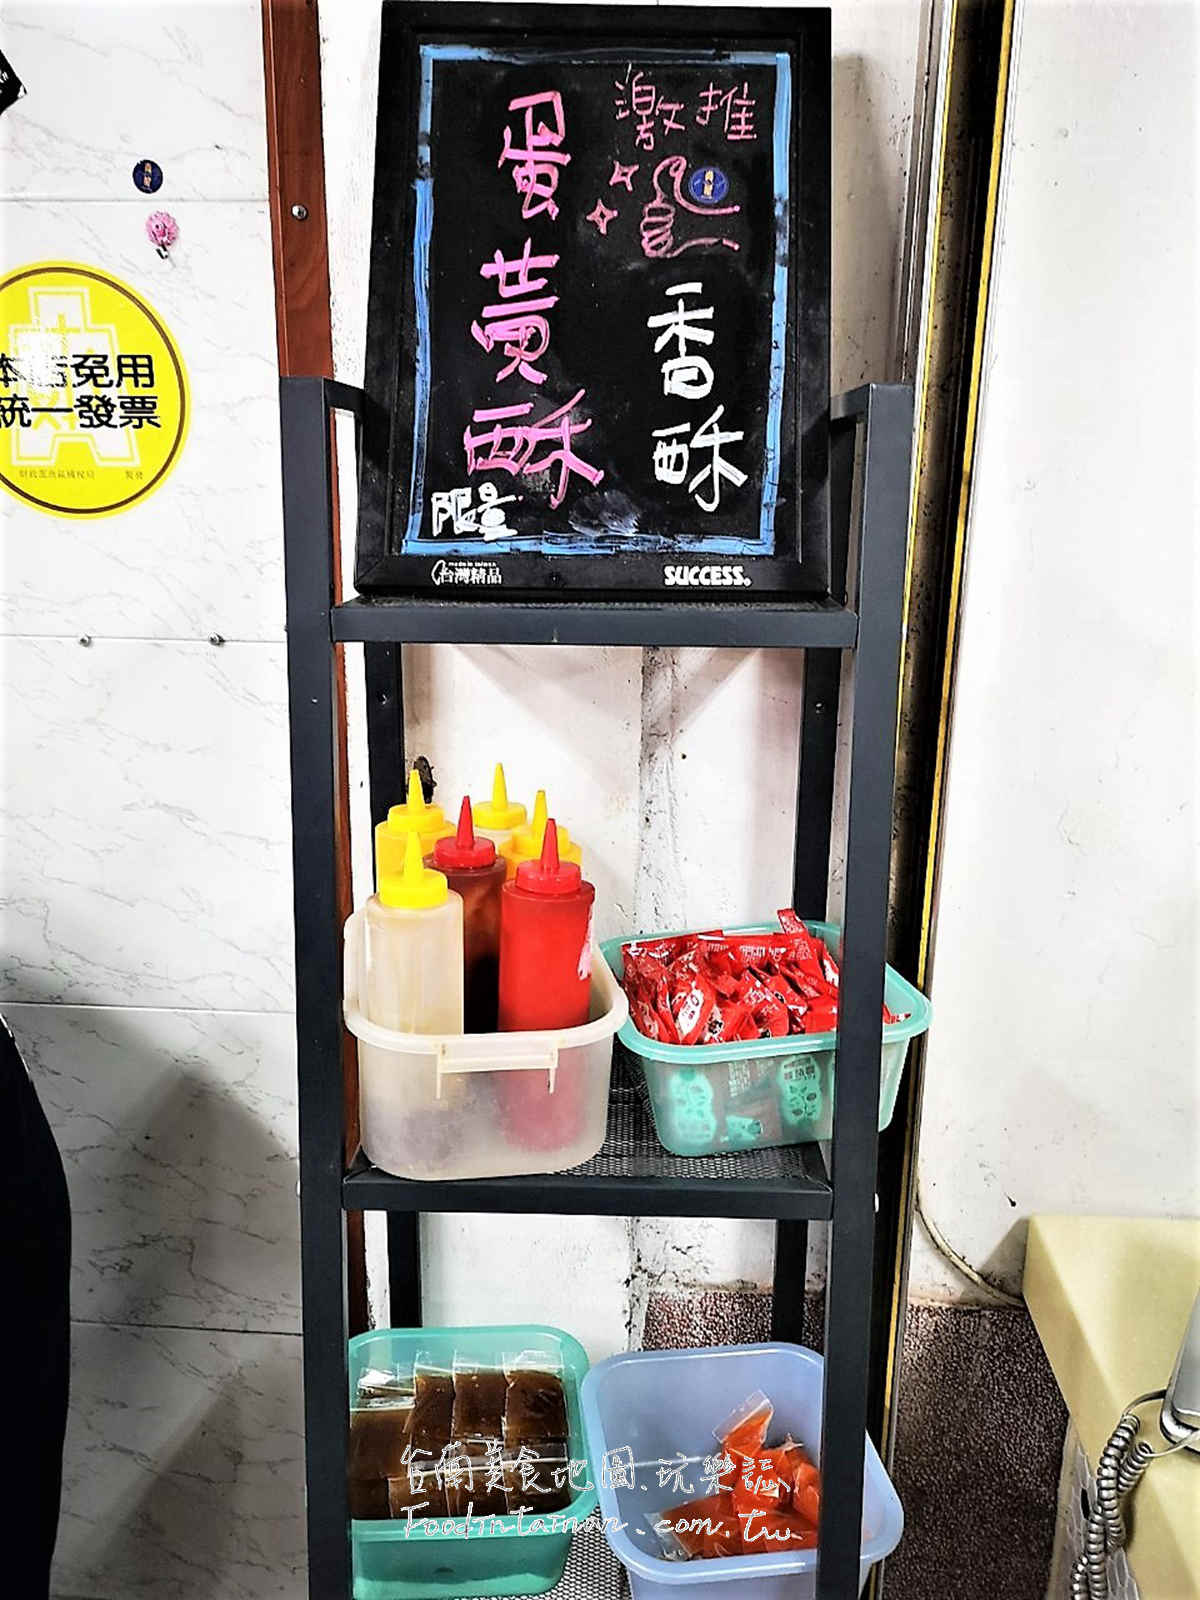 台南新營區晚餐宵夜小資平價選擇-尚屋宵夜豆奶專賣店